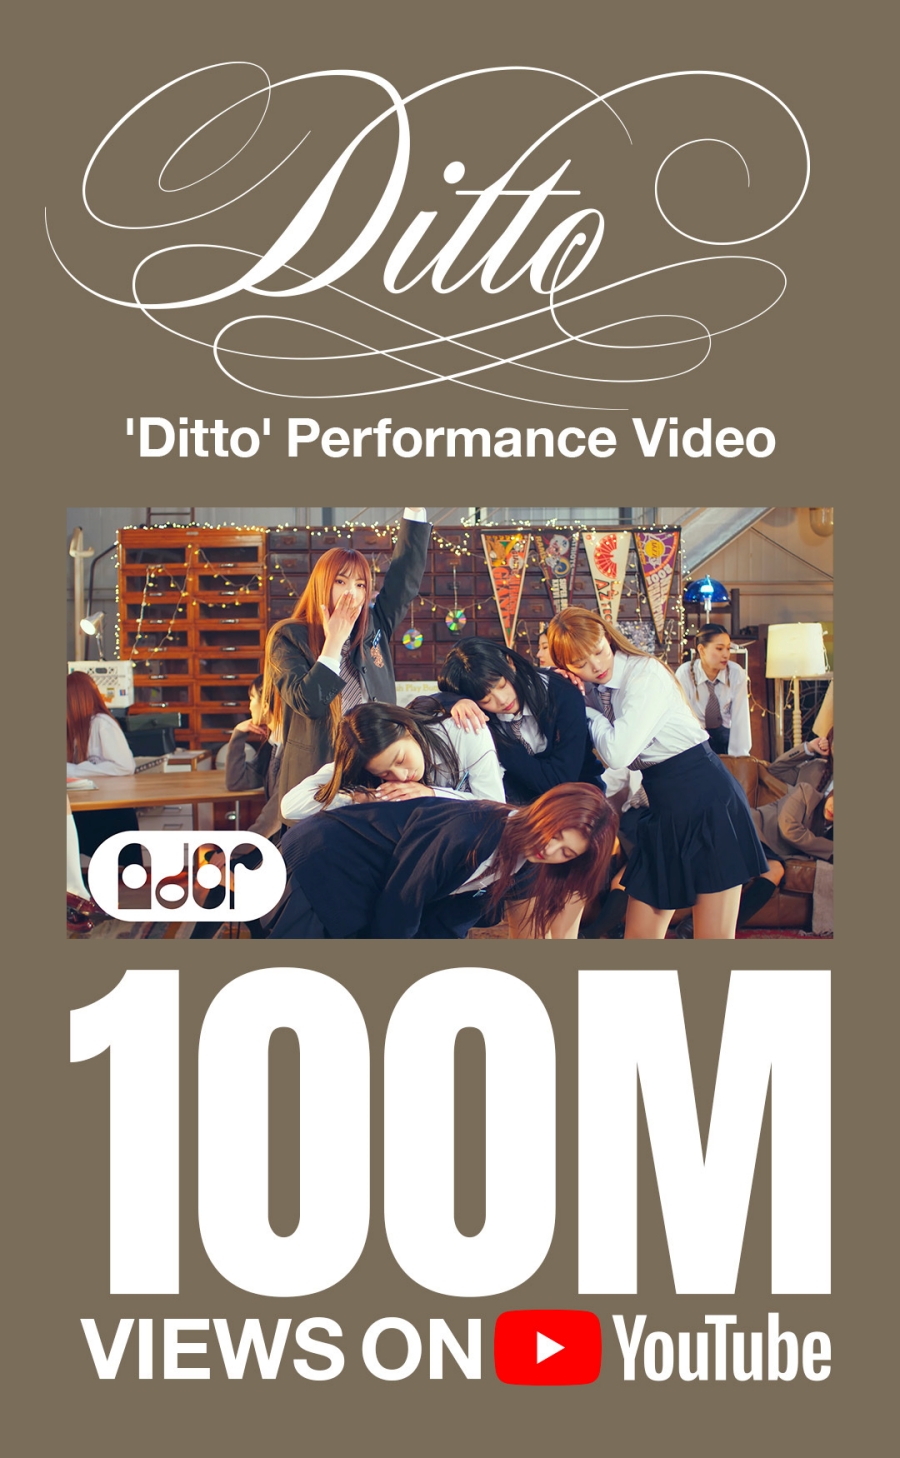 뉴진스 'Ditto' 퍼포먼스 비디오 1억 뷰 돌파